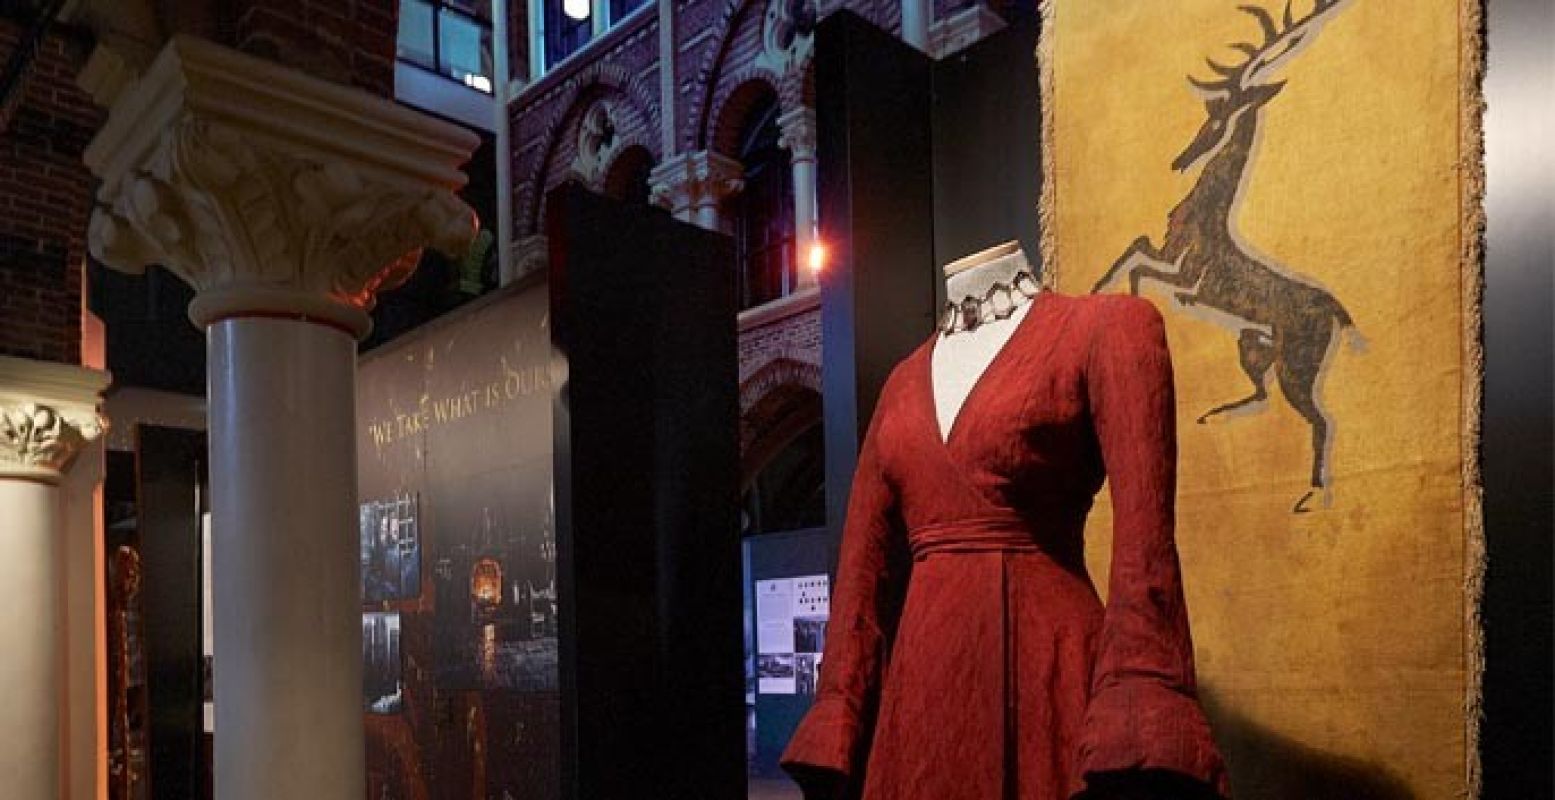 De rode jurk van Melisandre kwam er speciaal voor het Nederlandse publiek te hangen. Foto: HBO Nederland